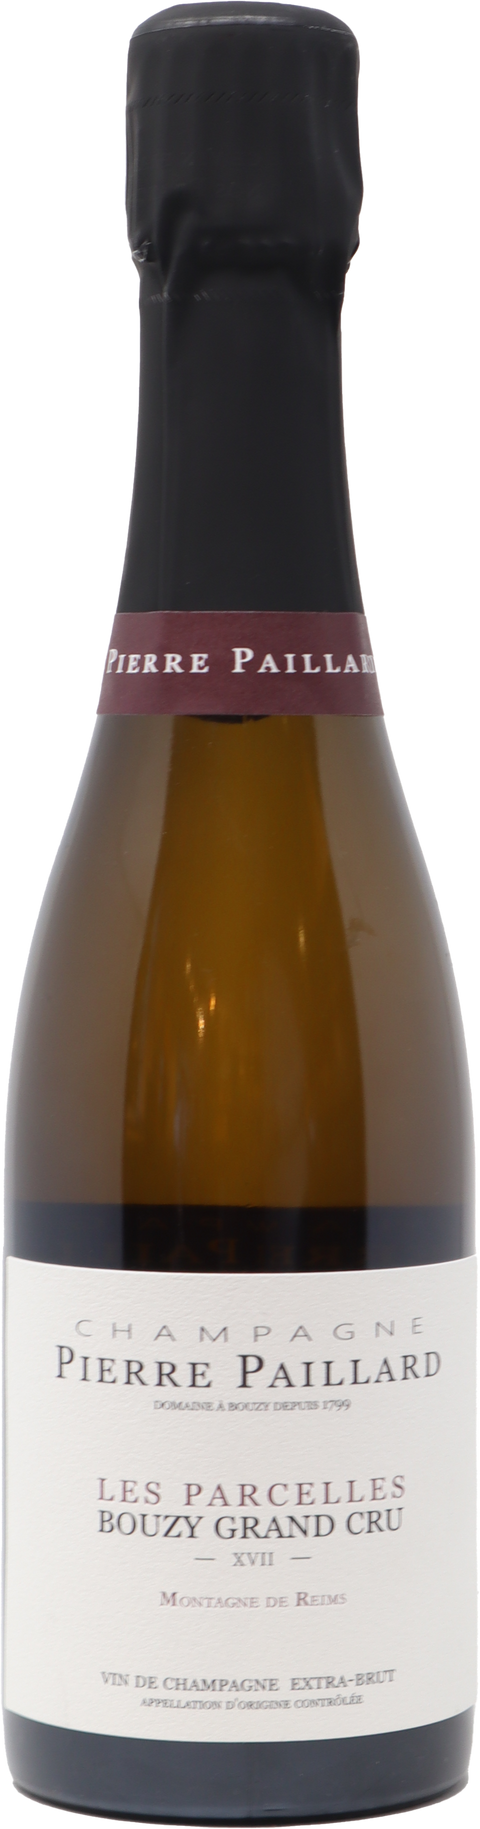 NV Pierre Paillard "Les Parcelles XVII", Extra Brut, Champagne, France 375ml